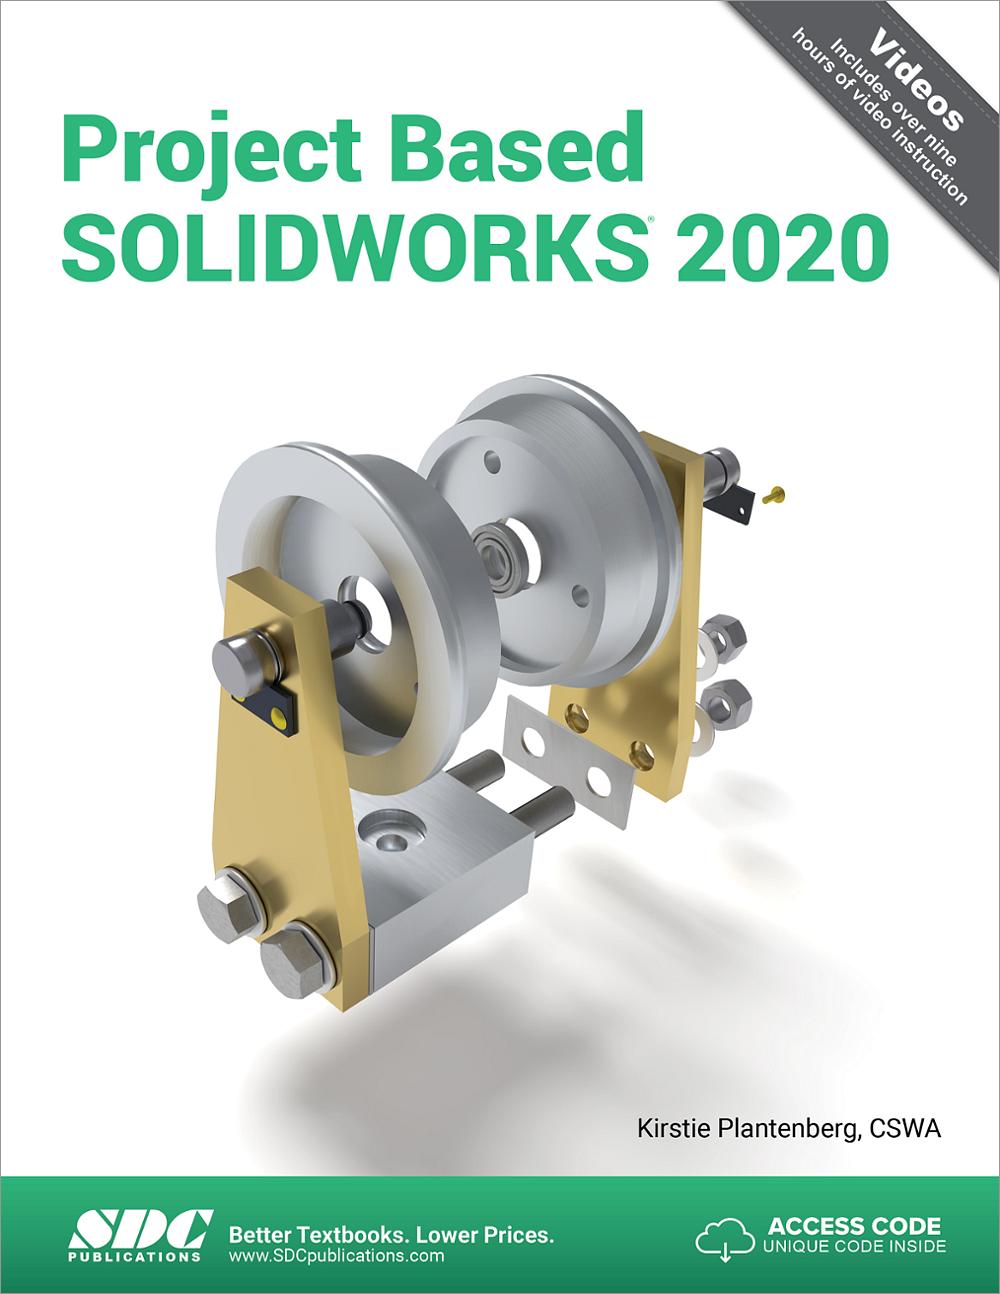 hsmworks for solidworks 2020